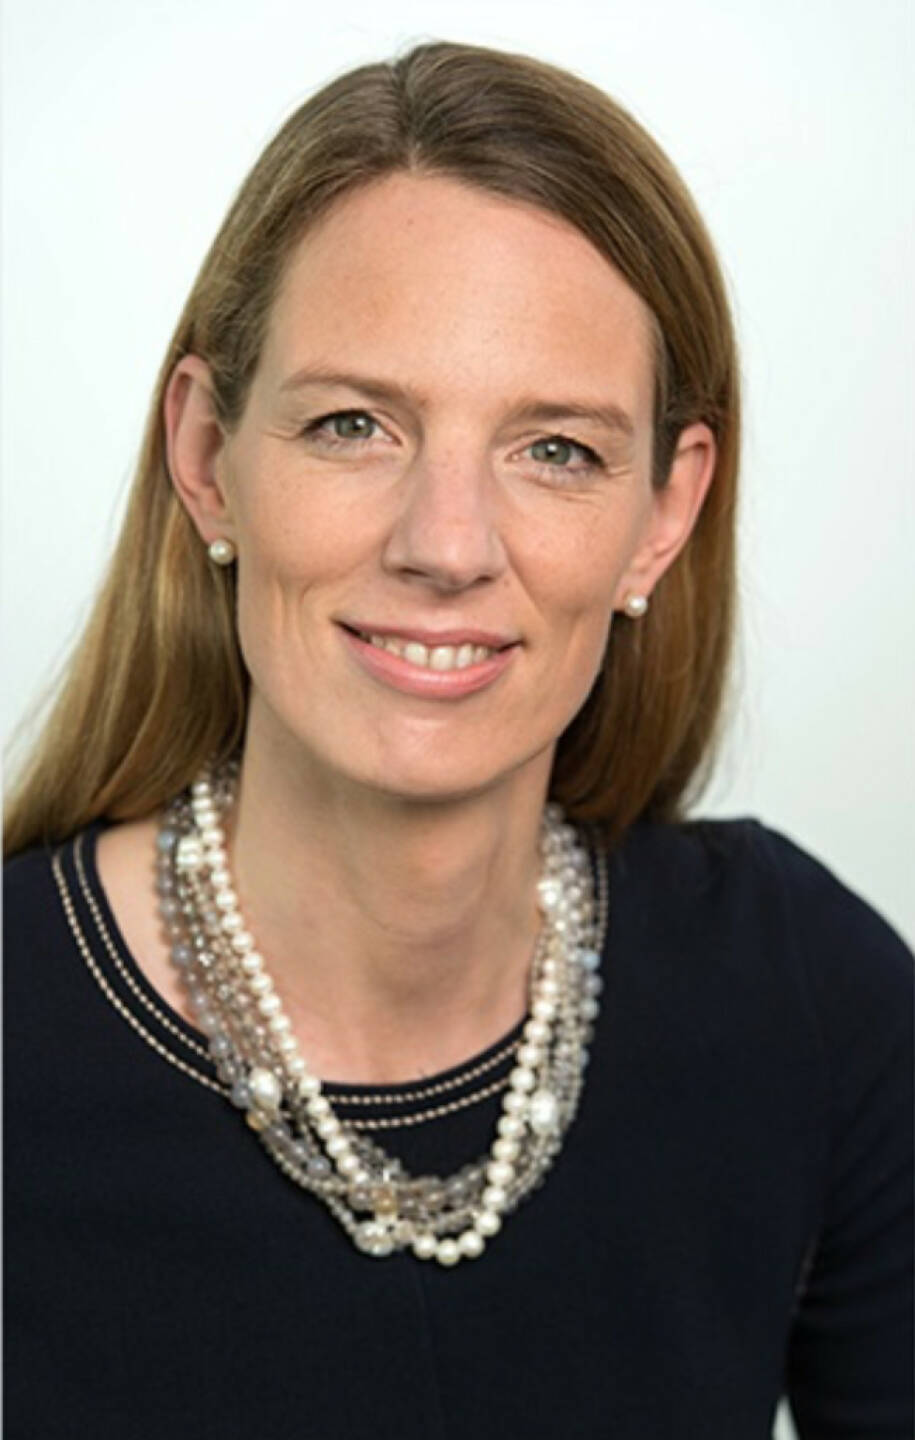 Der Aufsichtsrat der Vonovia SE hat Helene von Roeder in den Vorstand des Immobilienunternehmens berufen. Helene von Roeder wird Mitte 2018 eintreten. Bildquelle: Vonovia.de